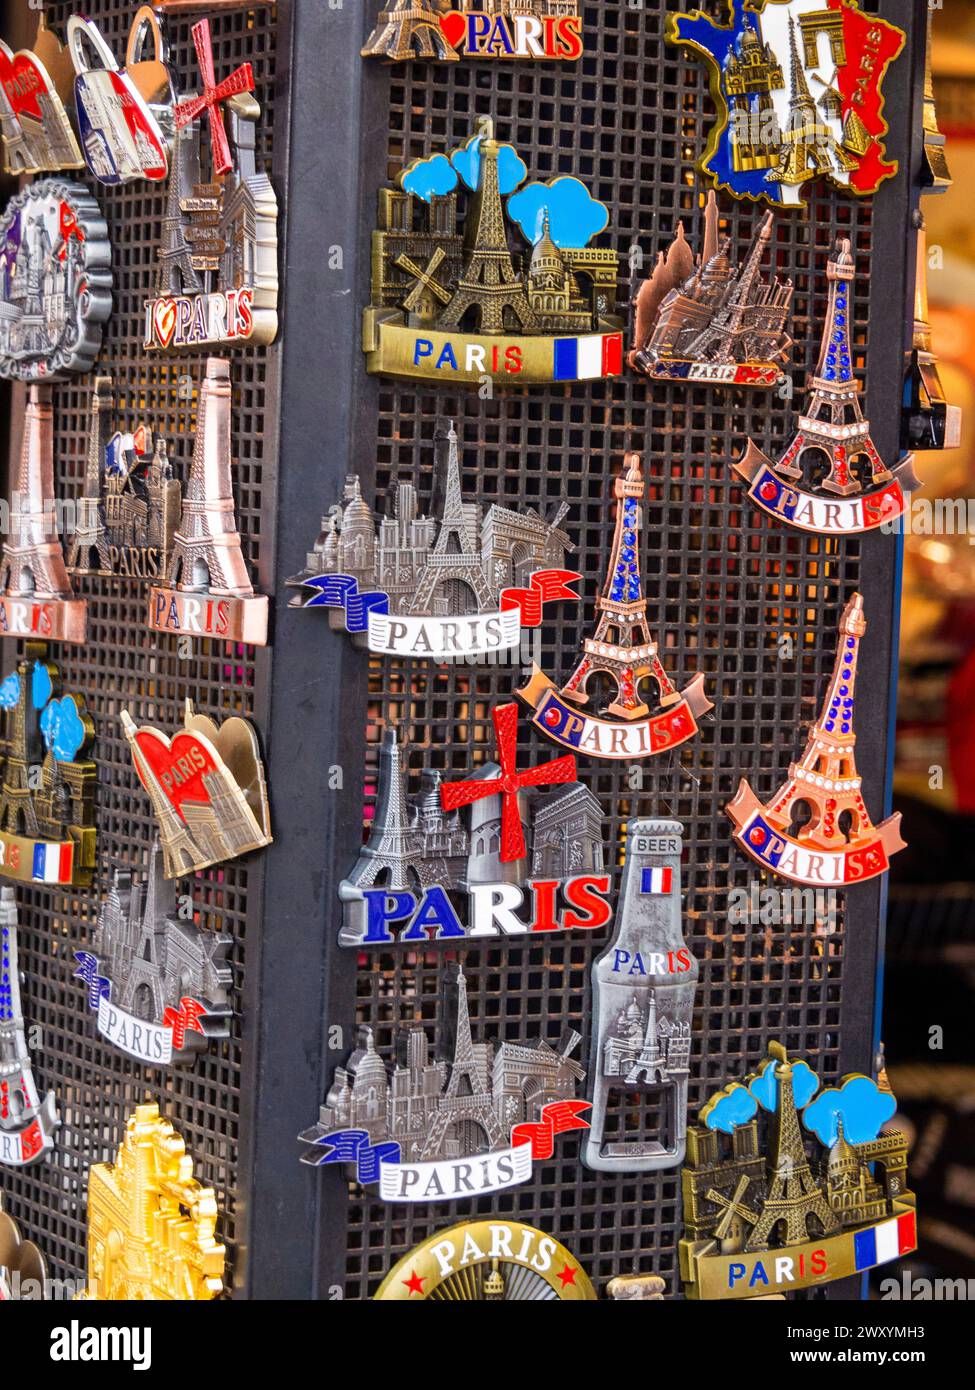 Souvenirs touristiques en forme de Tour Eiffel. Ile de France. Paris. France. Europe Banque D'Images